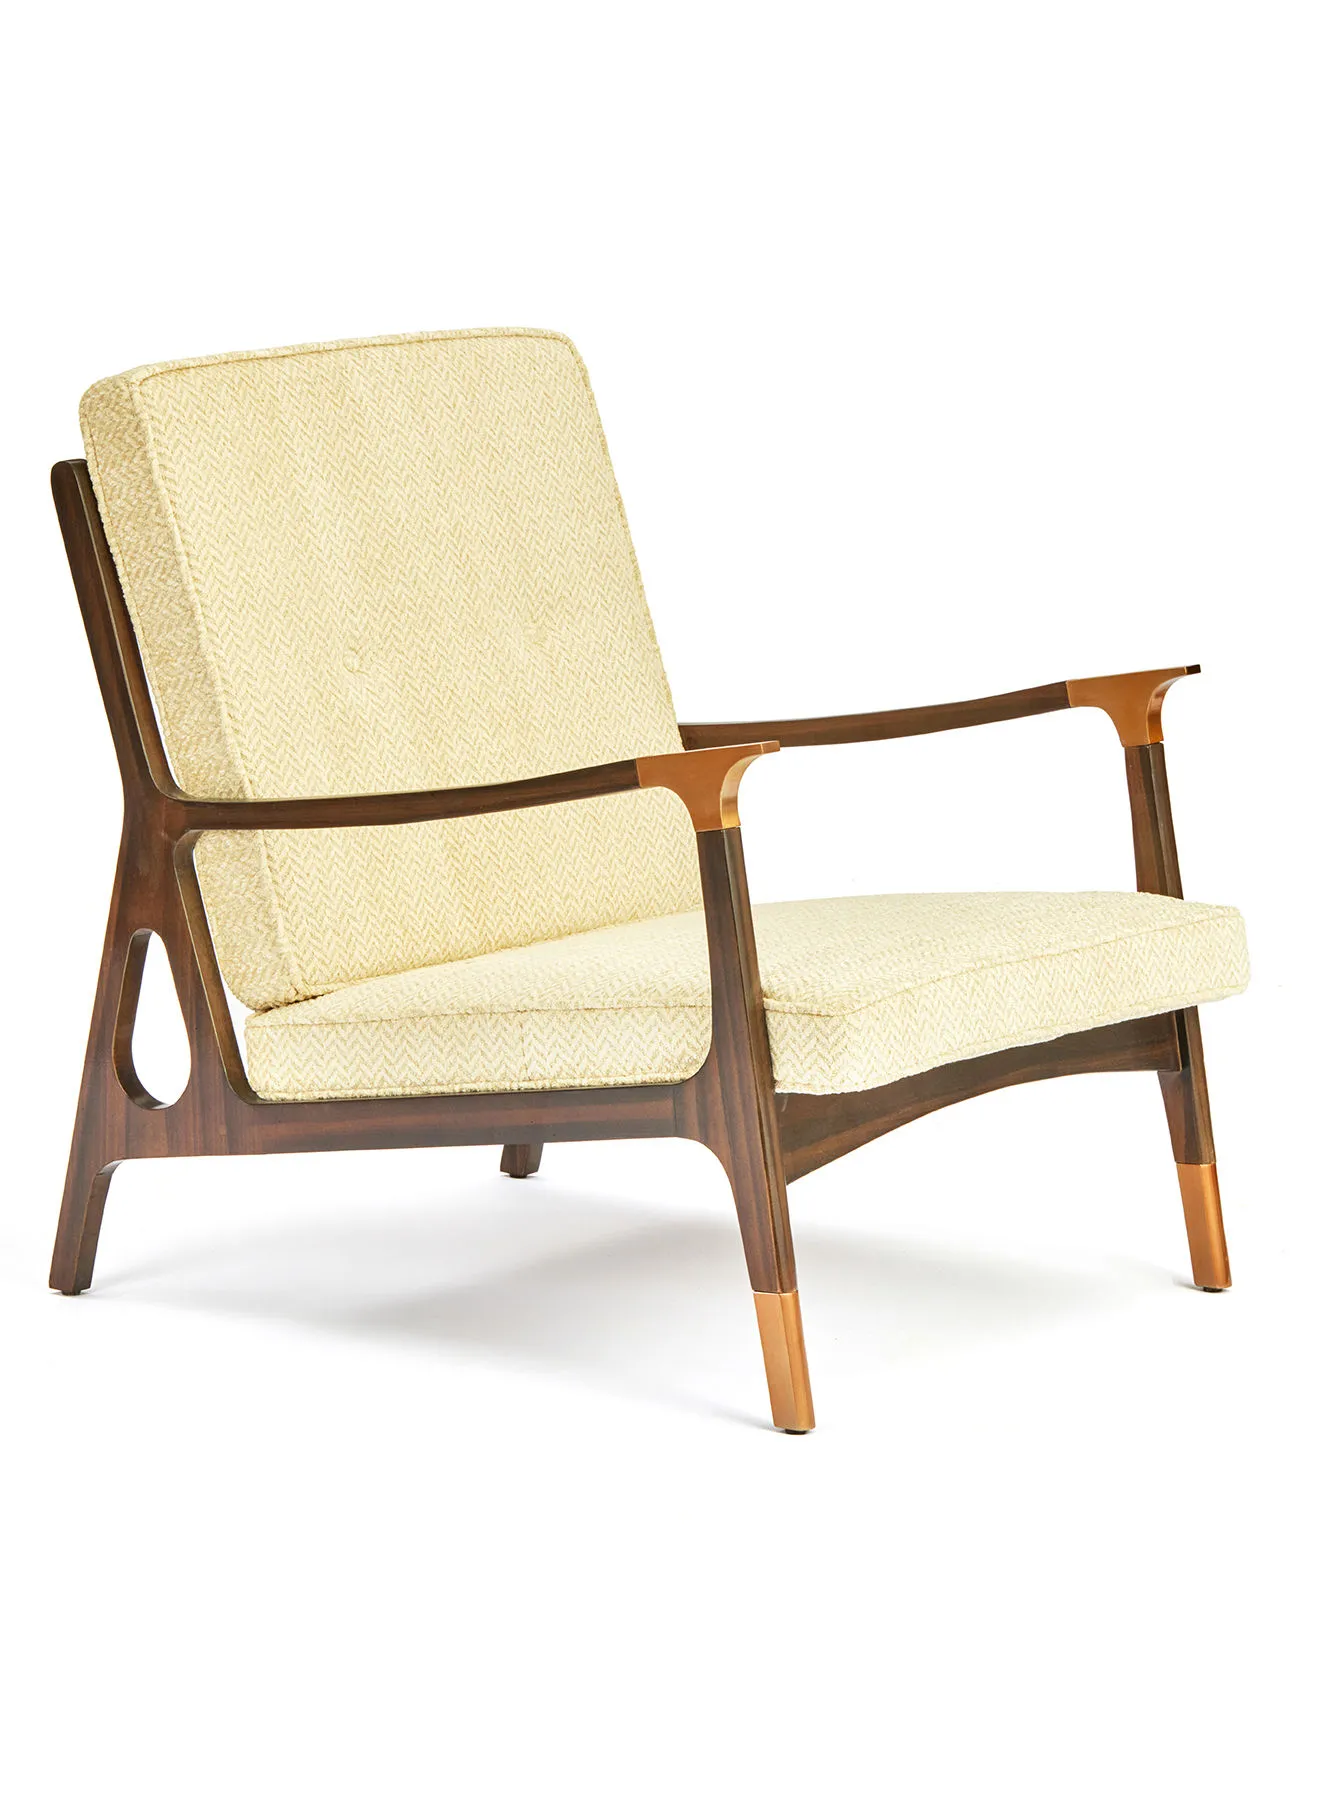 ebb & flow Armchair Luxurious - In Dark Brown Wooden Chair Size 700 X 840 X 760